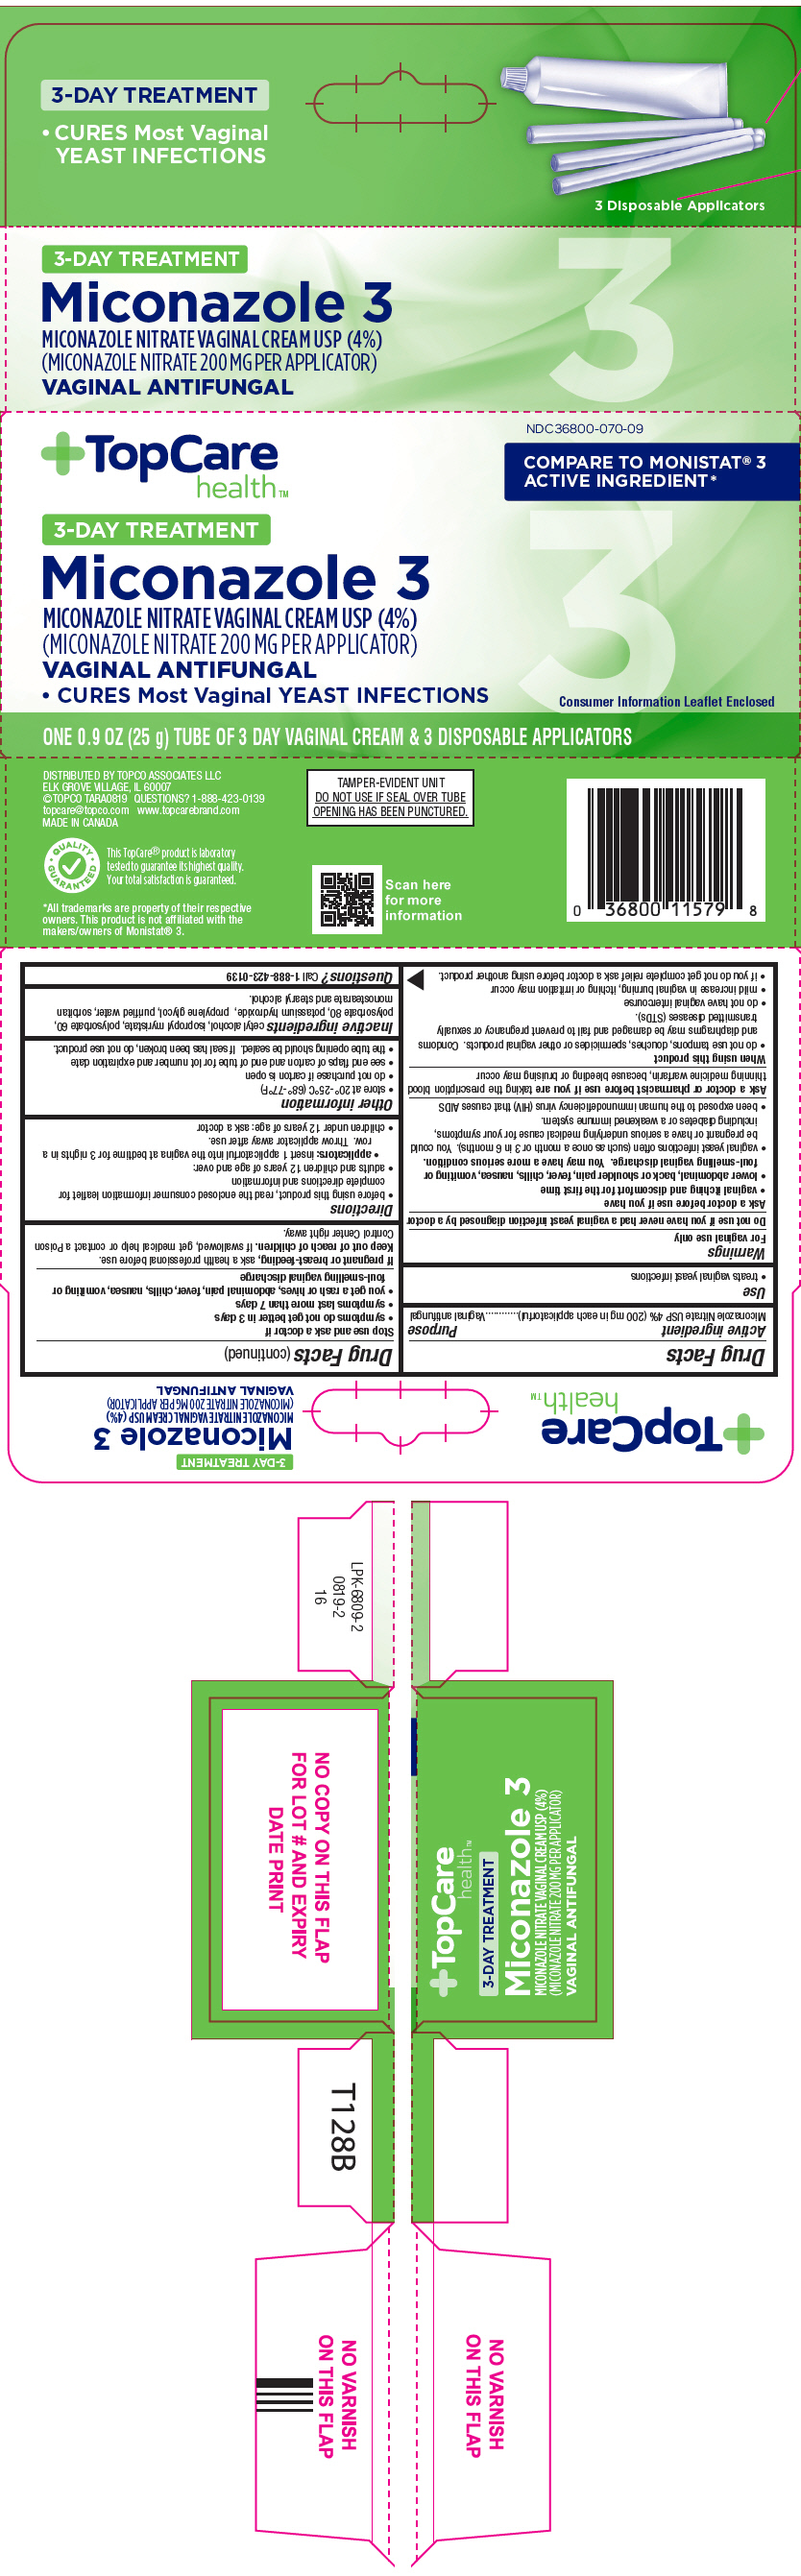 PRINCIPAL DISPLAY PANEL - 25 g Tube Carton